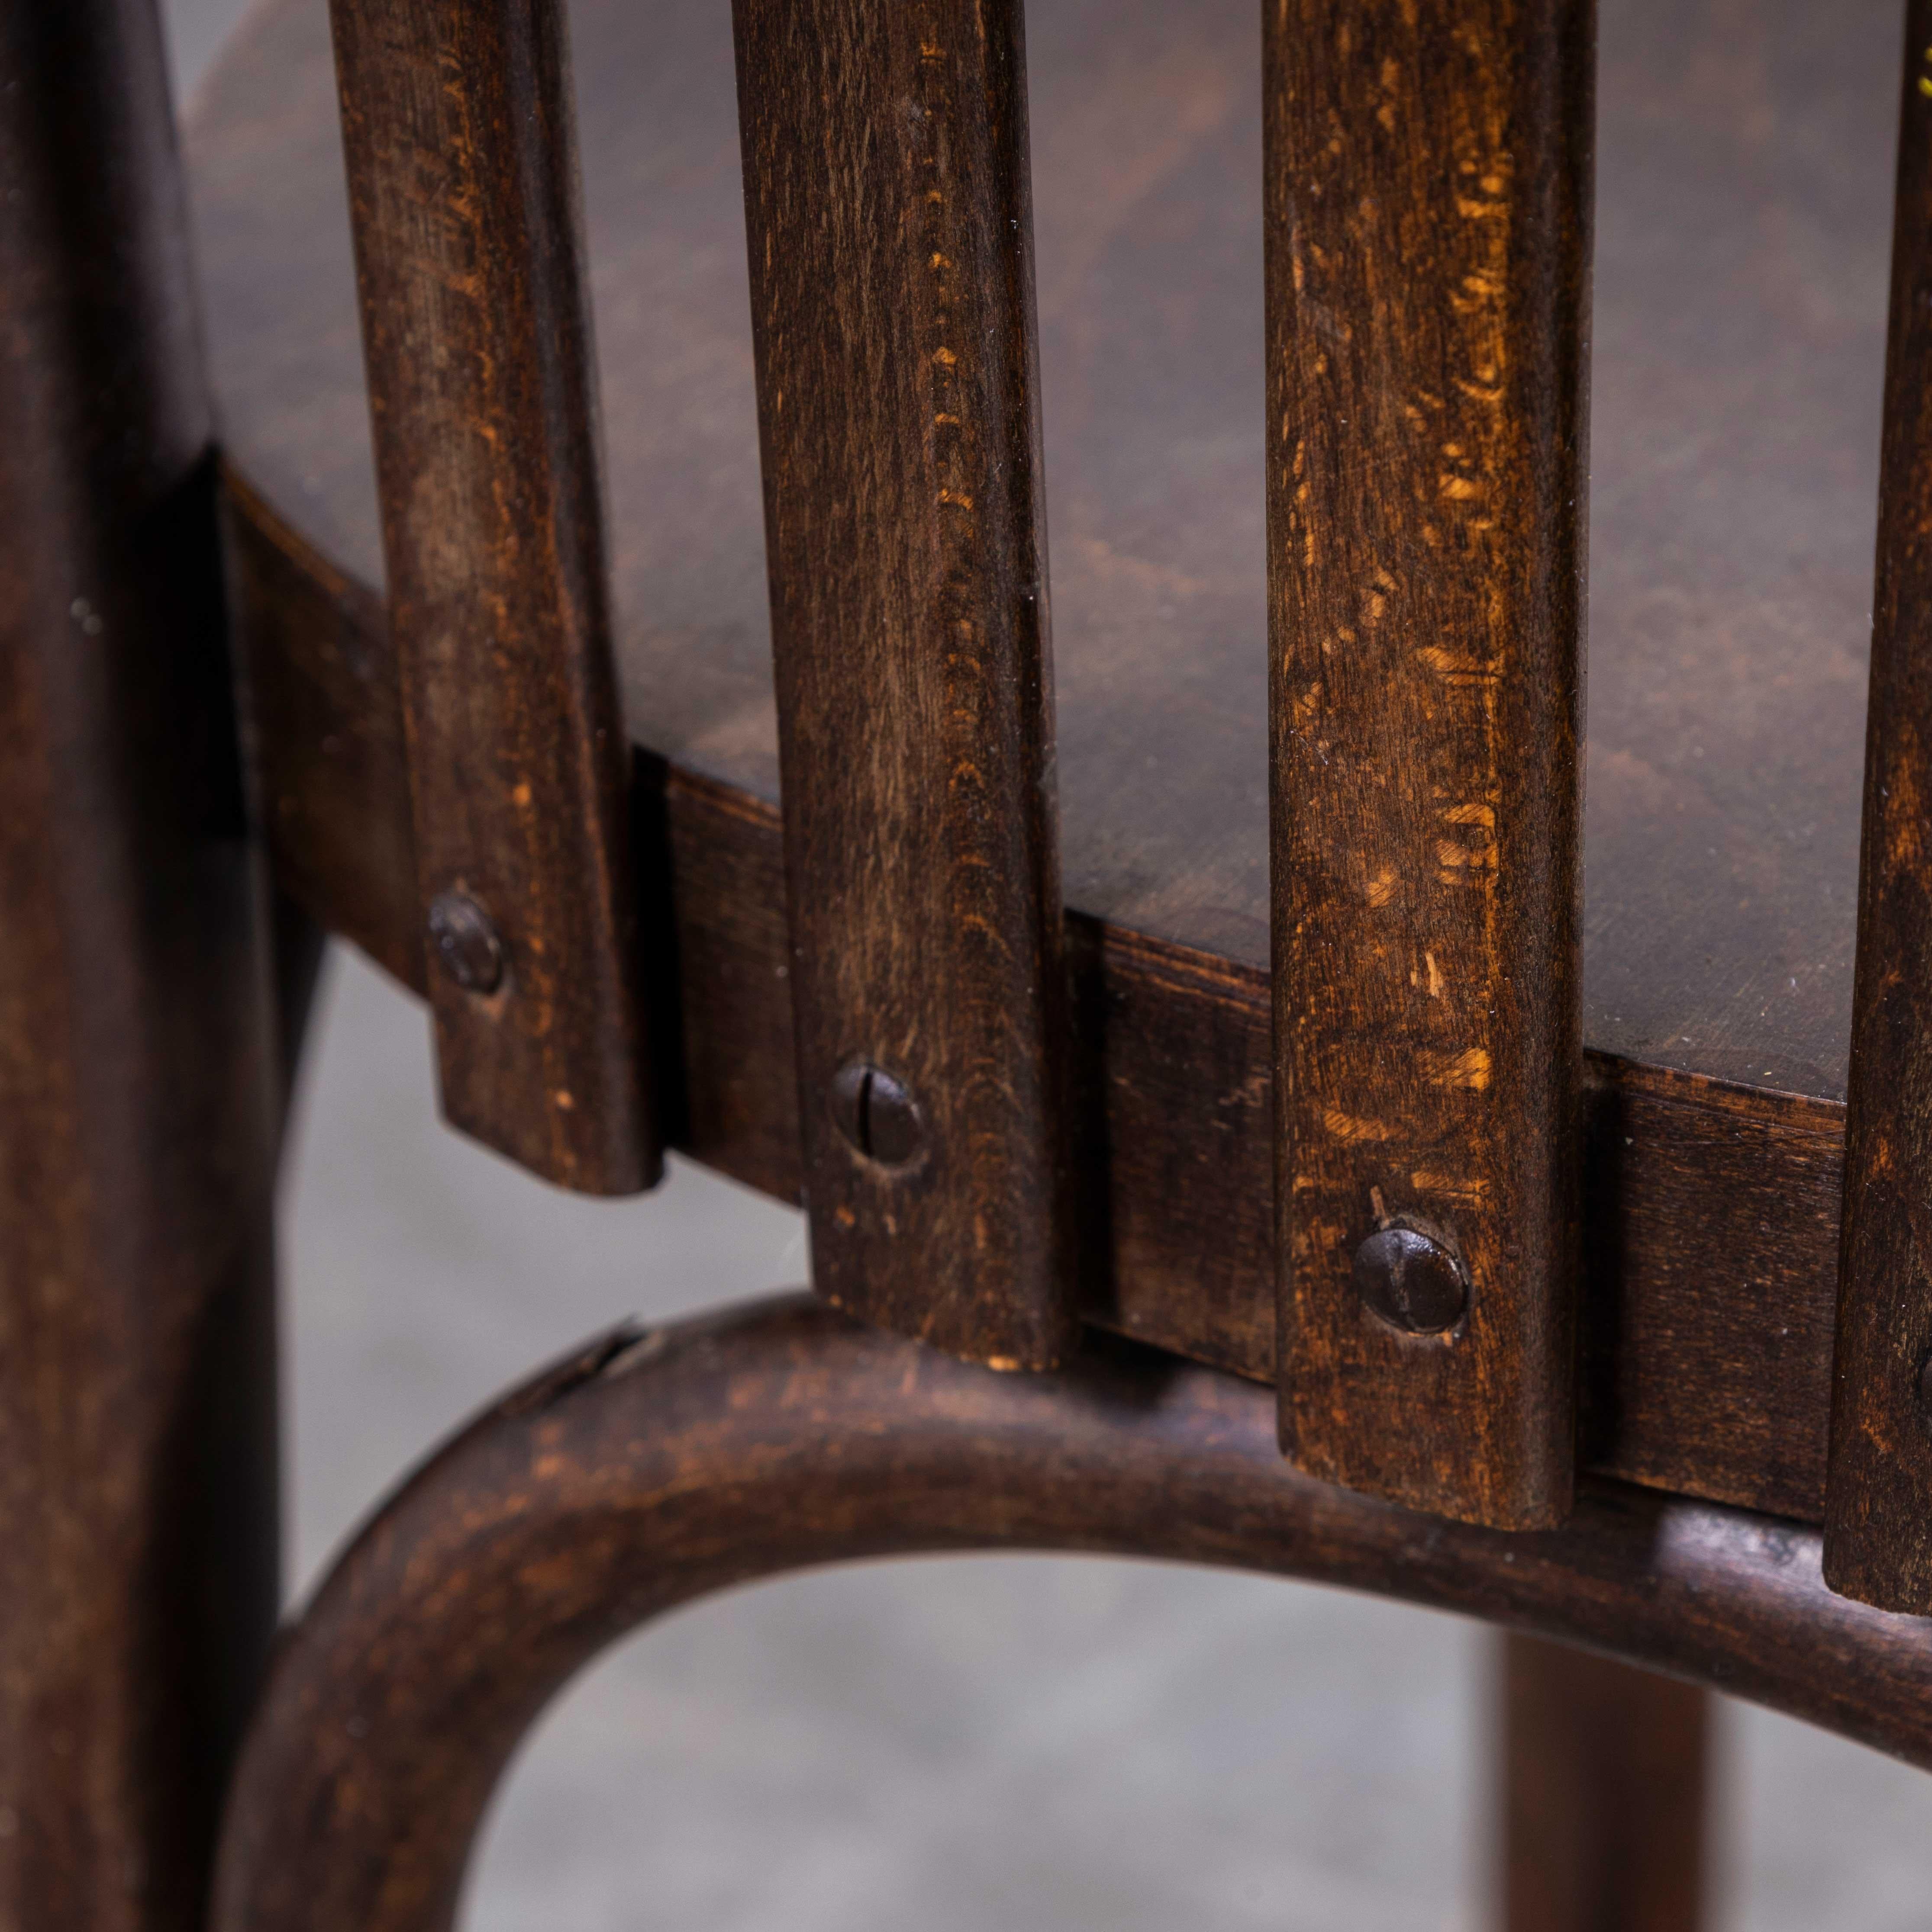 Chaise de salle à manger Luterma en bois d'ébène et de chêne des années 1950 - jeu de huit pièces
Chaise de salle à manger Luterma en bois d'ébène des années 1950 - jeu de huit. Le processus de cintrage du hêtre à la vapeur pour créer des chaises